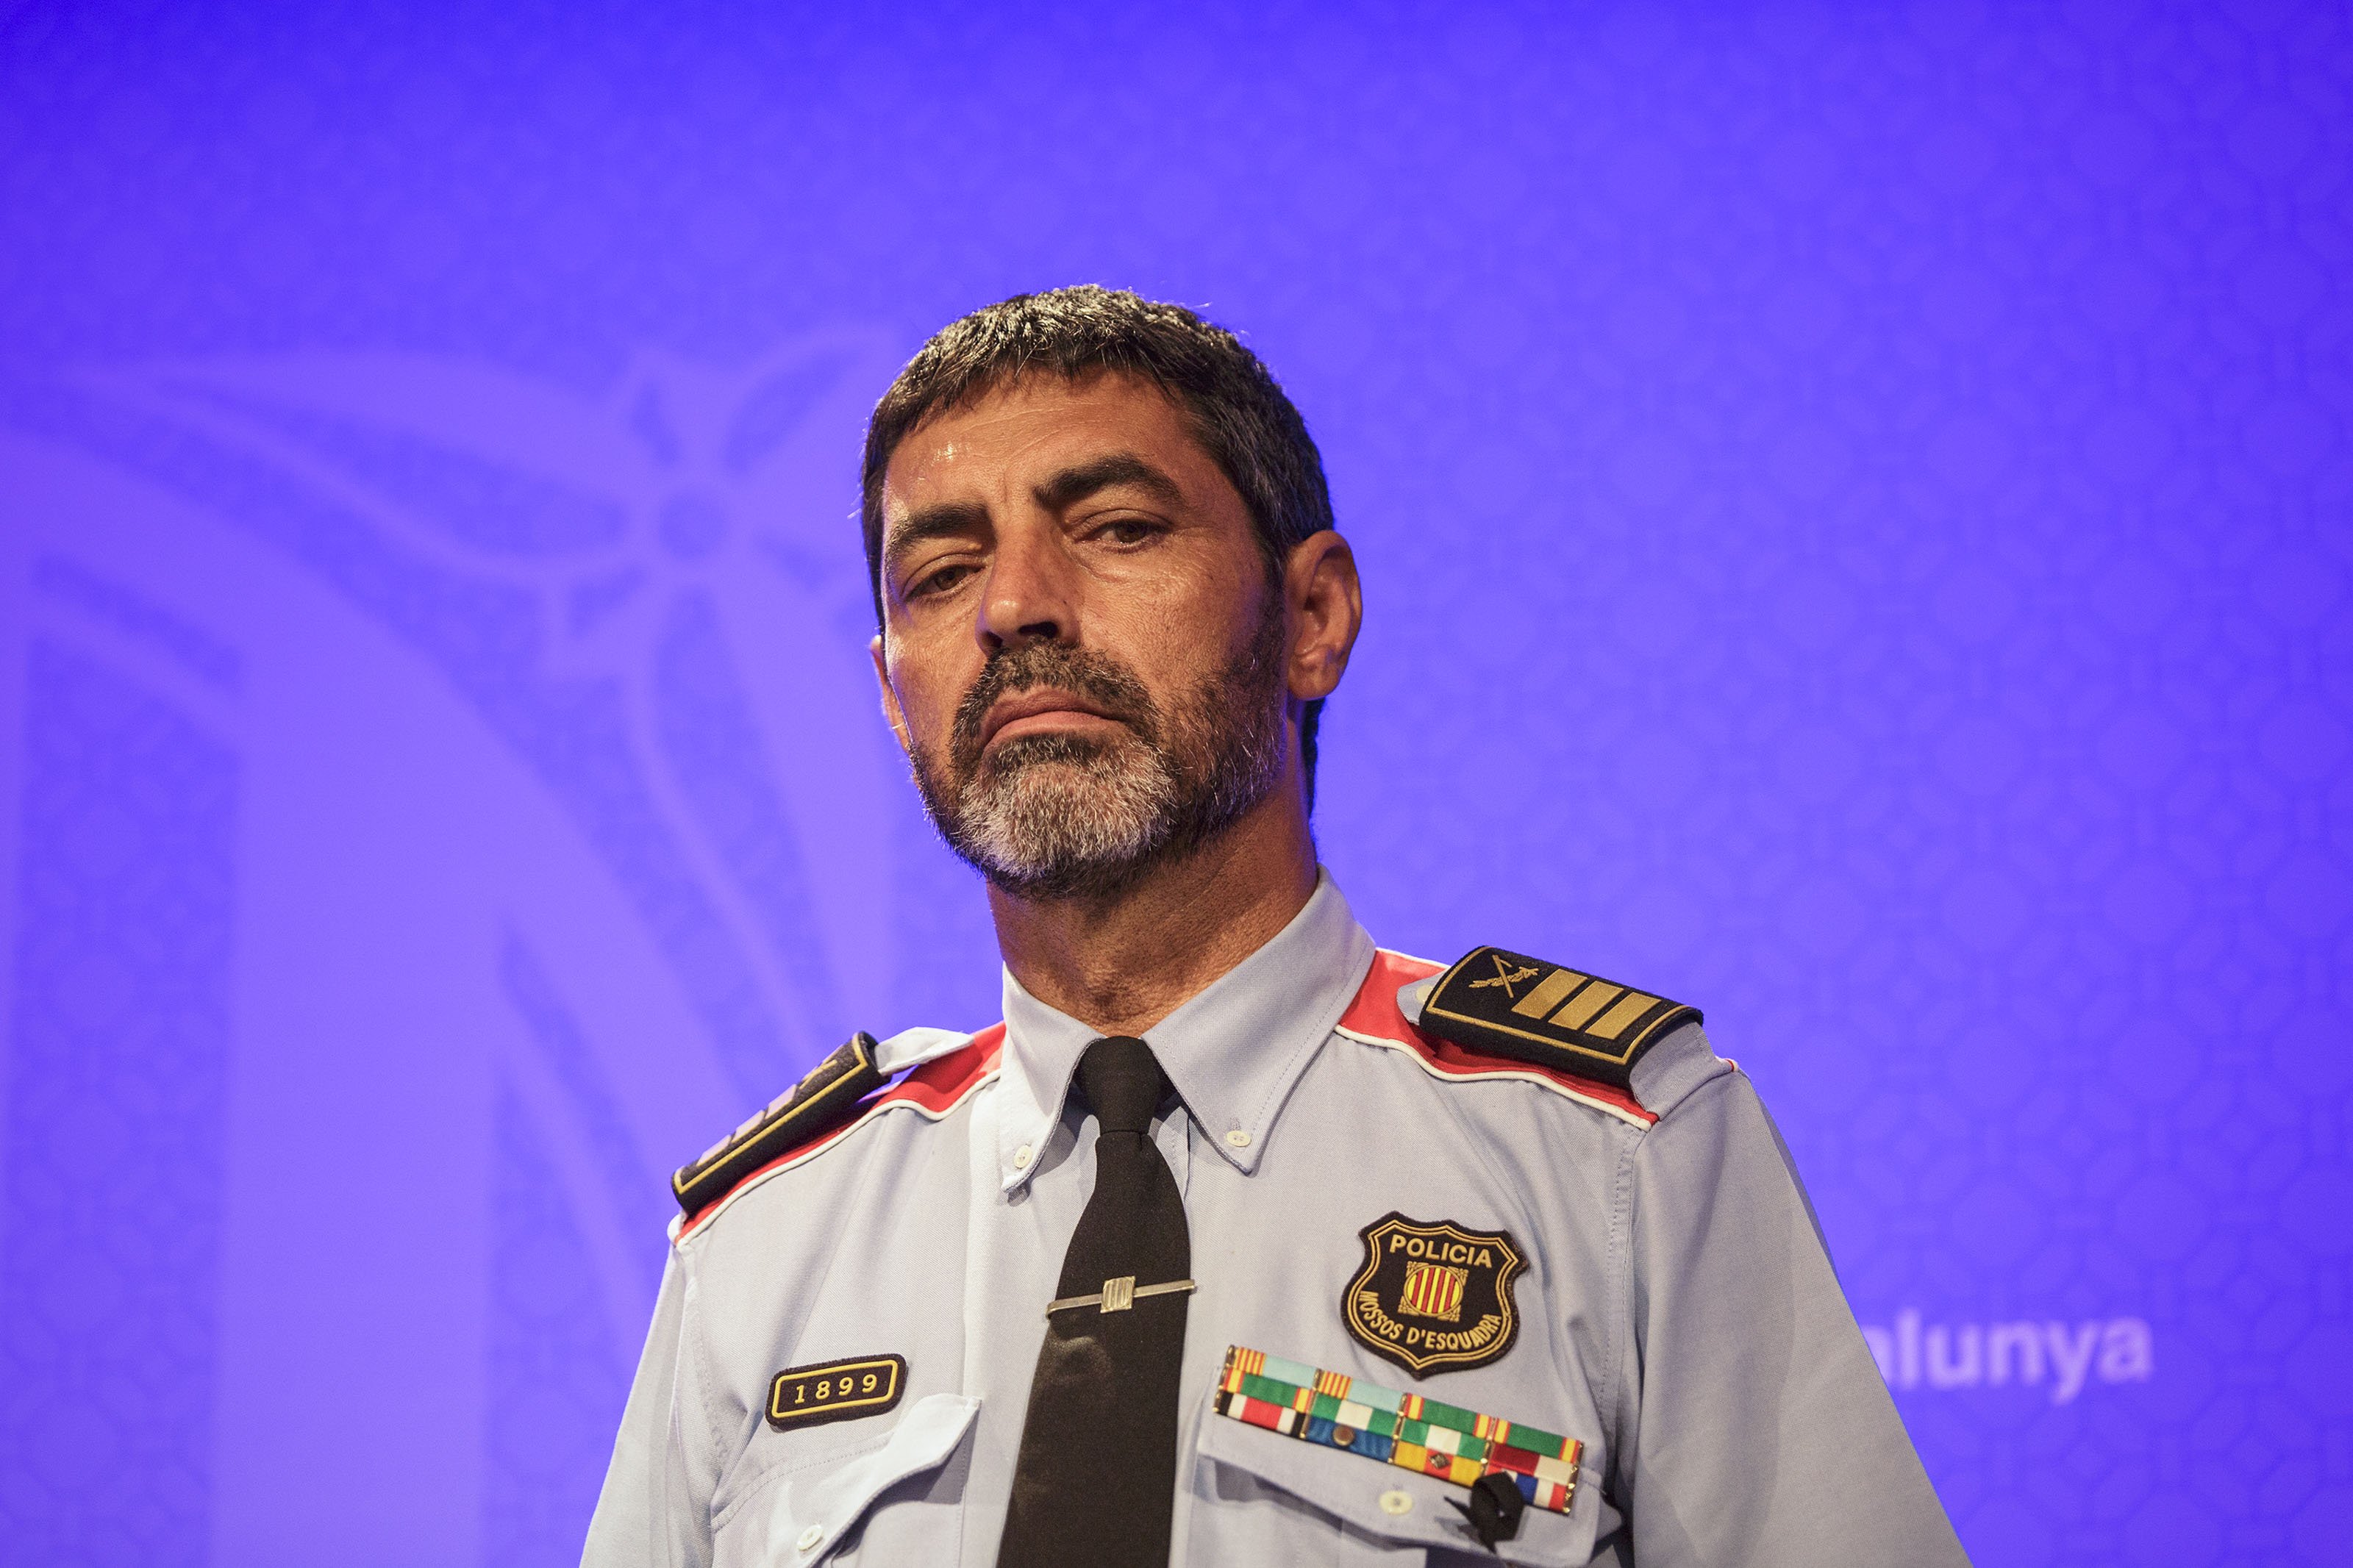 Josep Lluis Trapero Major de los Mossos d'Esquadra - Sergi Alcazar